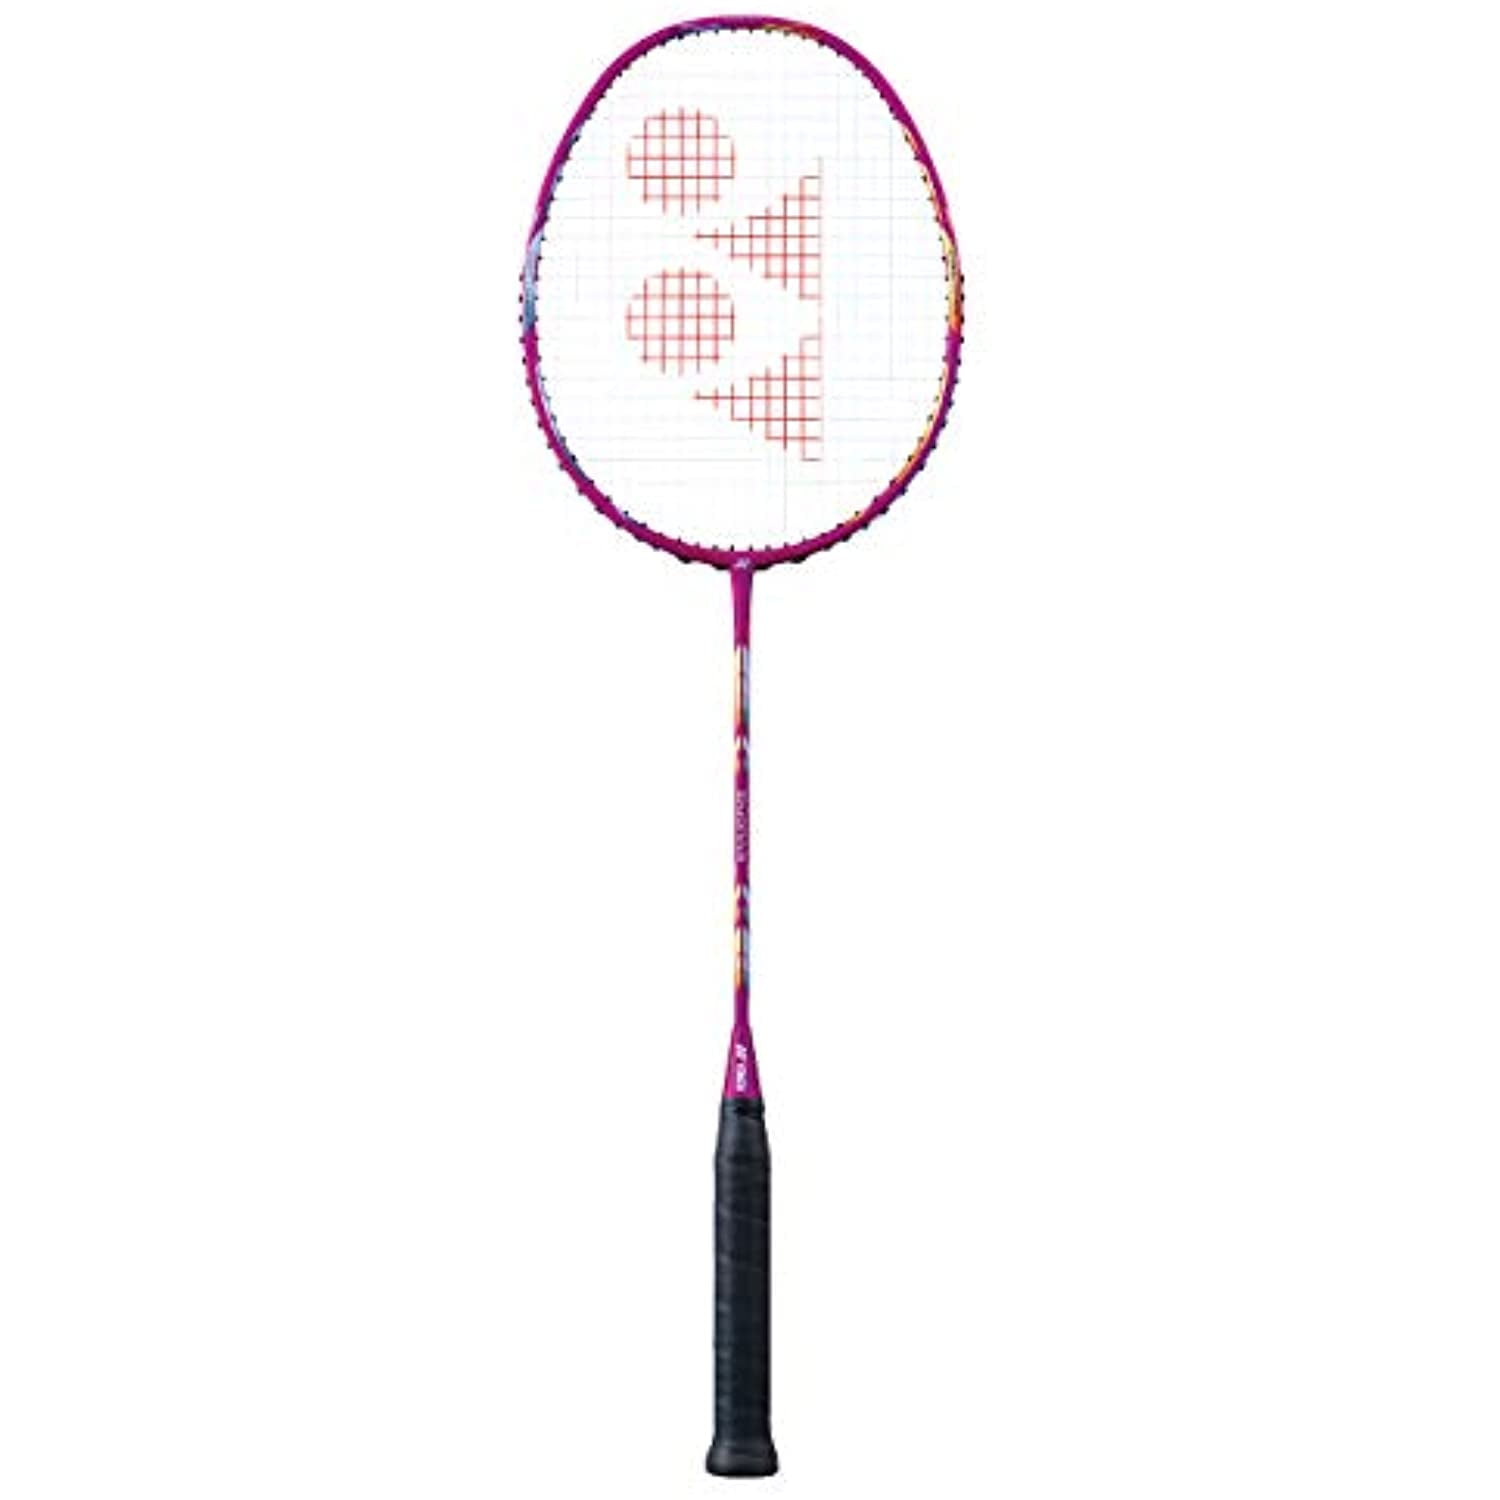 YONEX Arcsaber 11 2017/18 New Badminton Racket